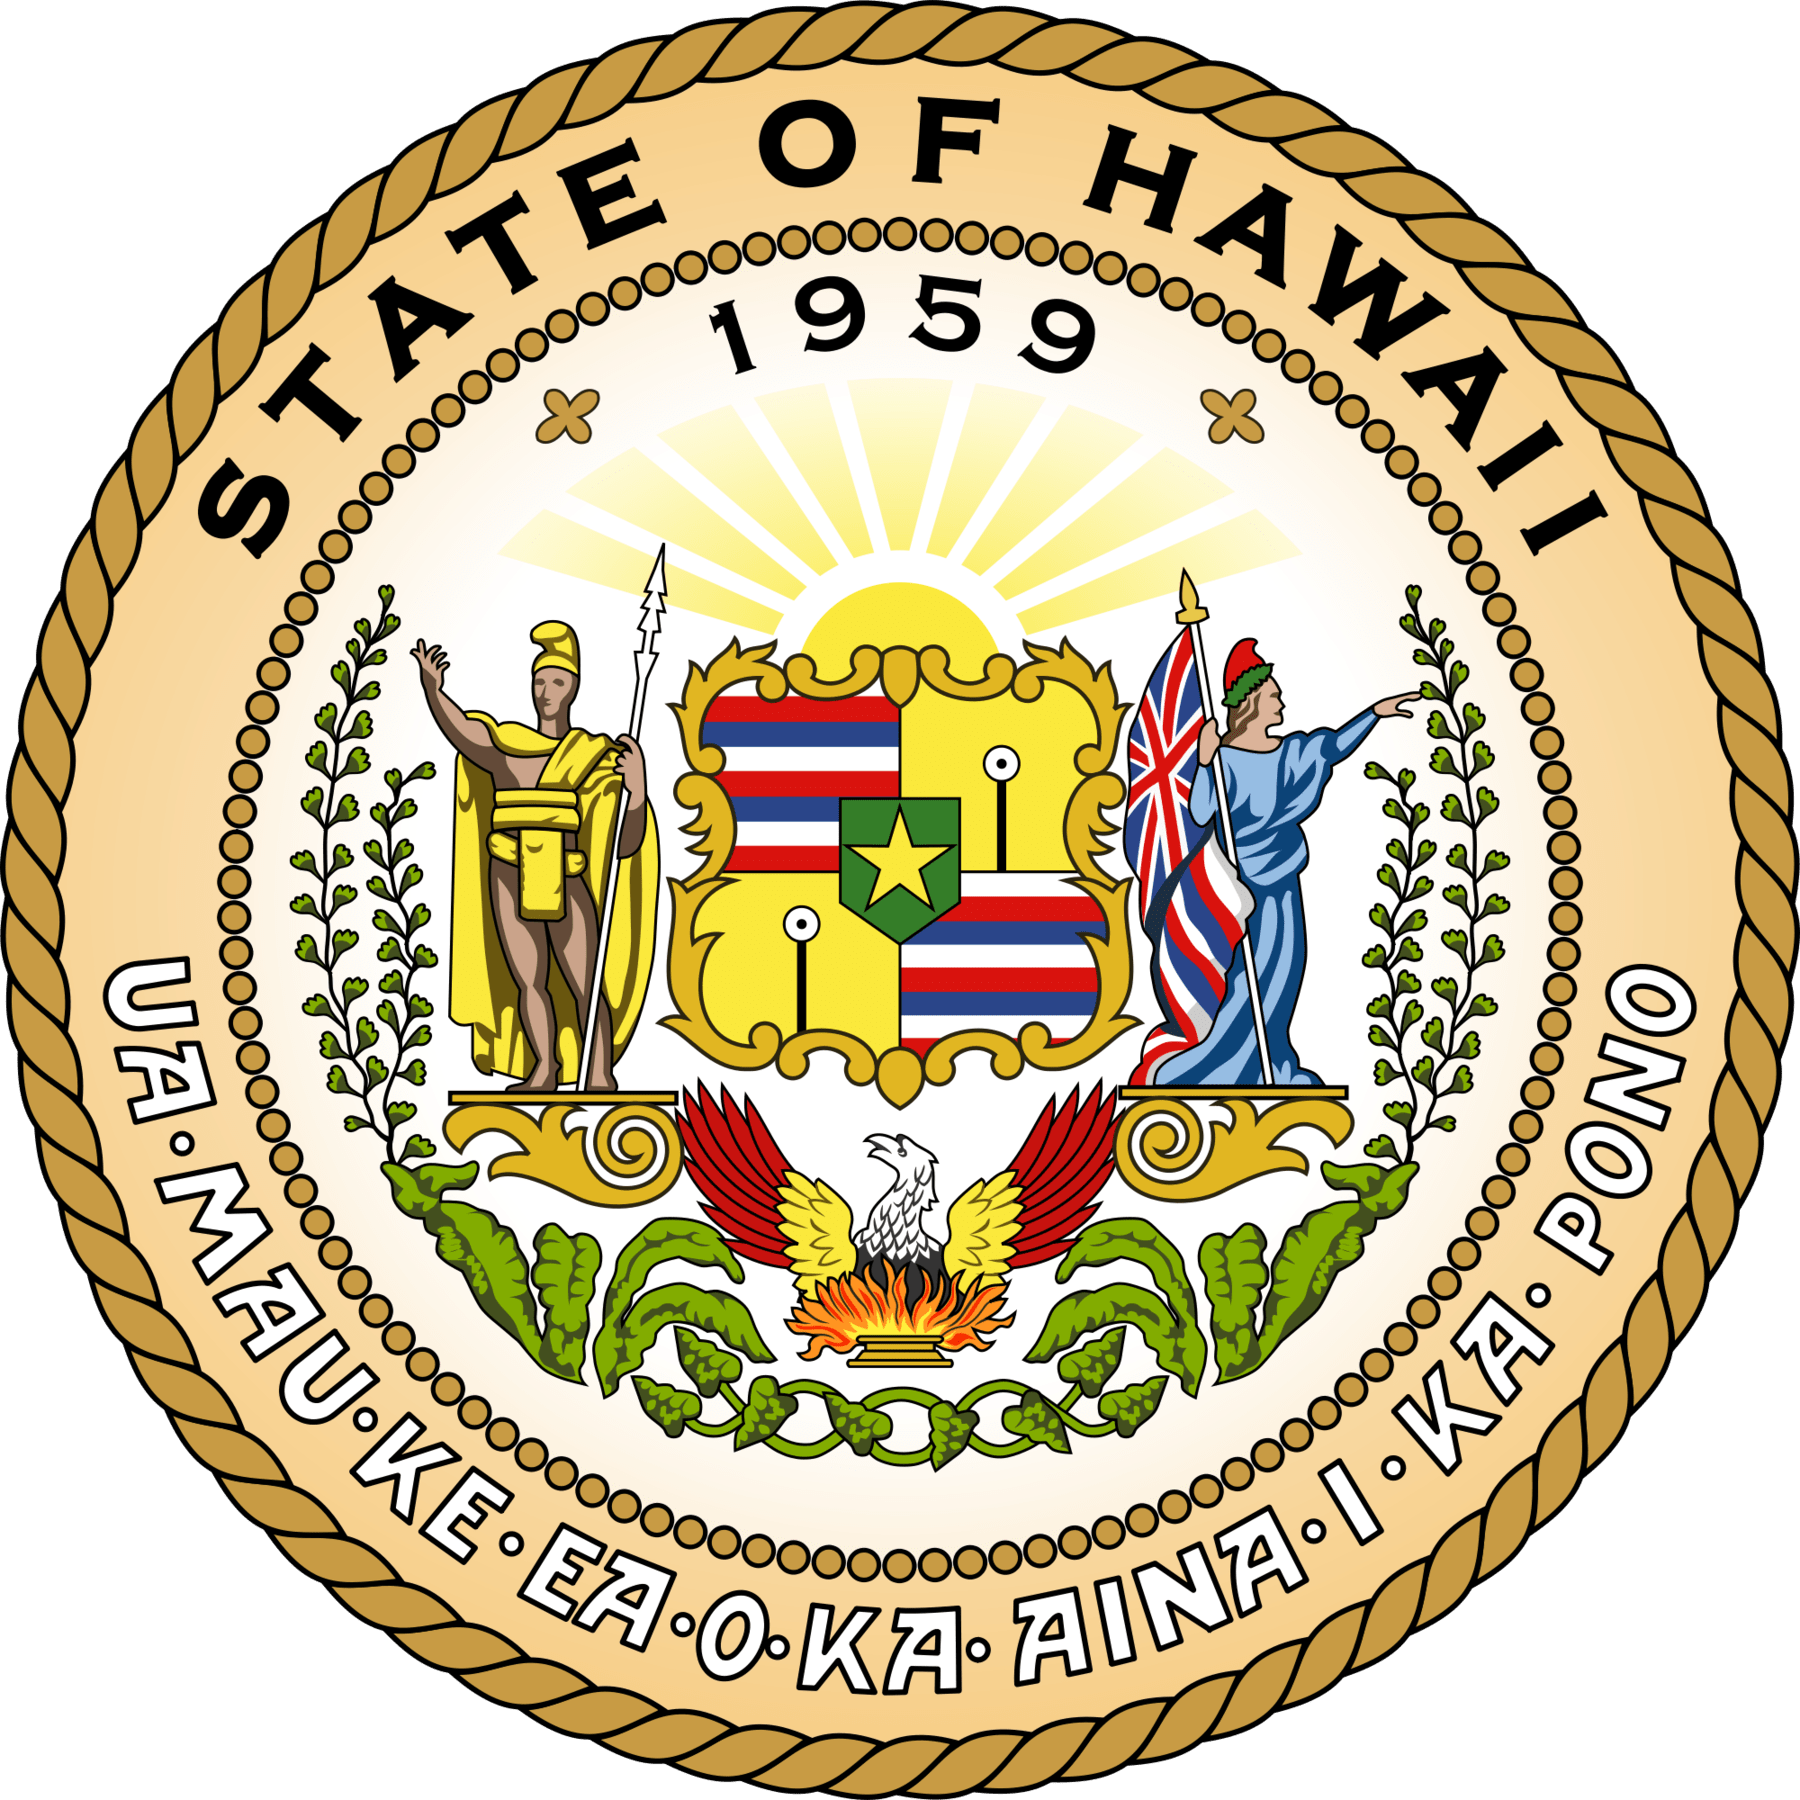 Hawaii Student Loan